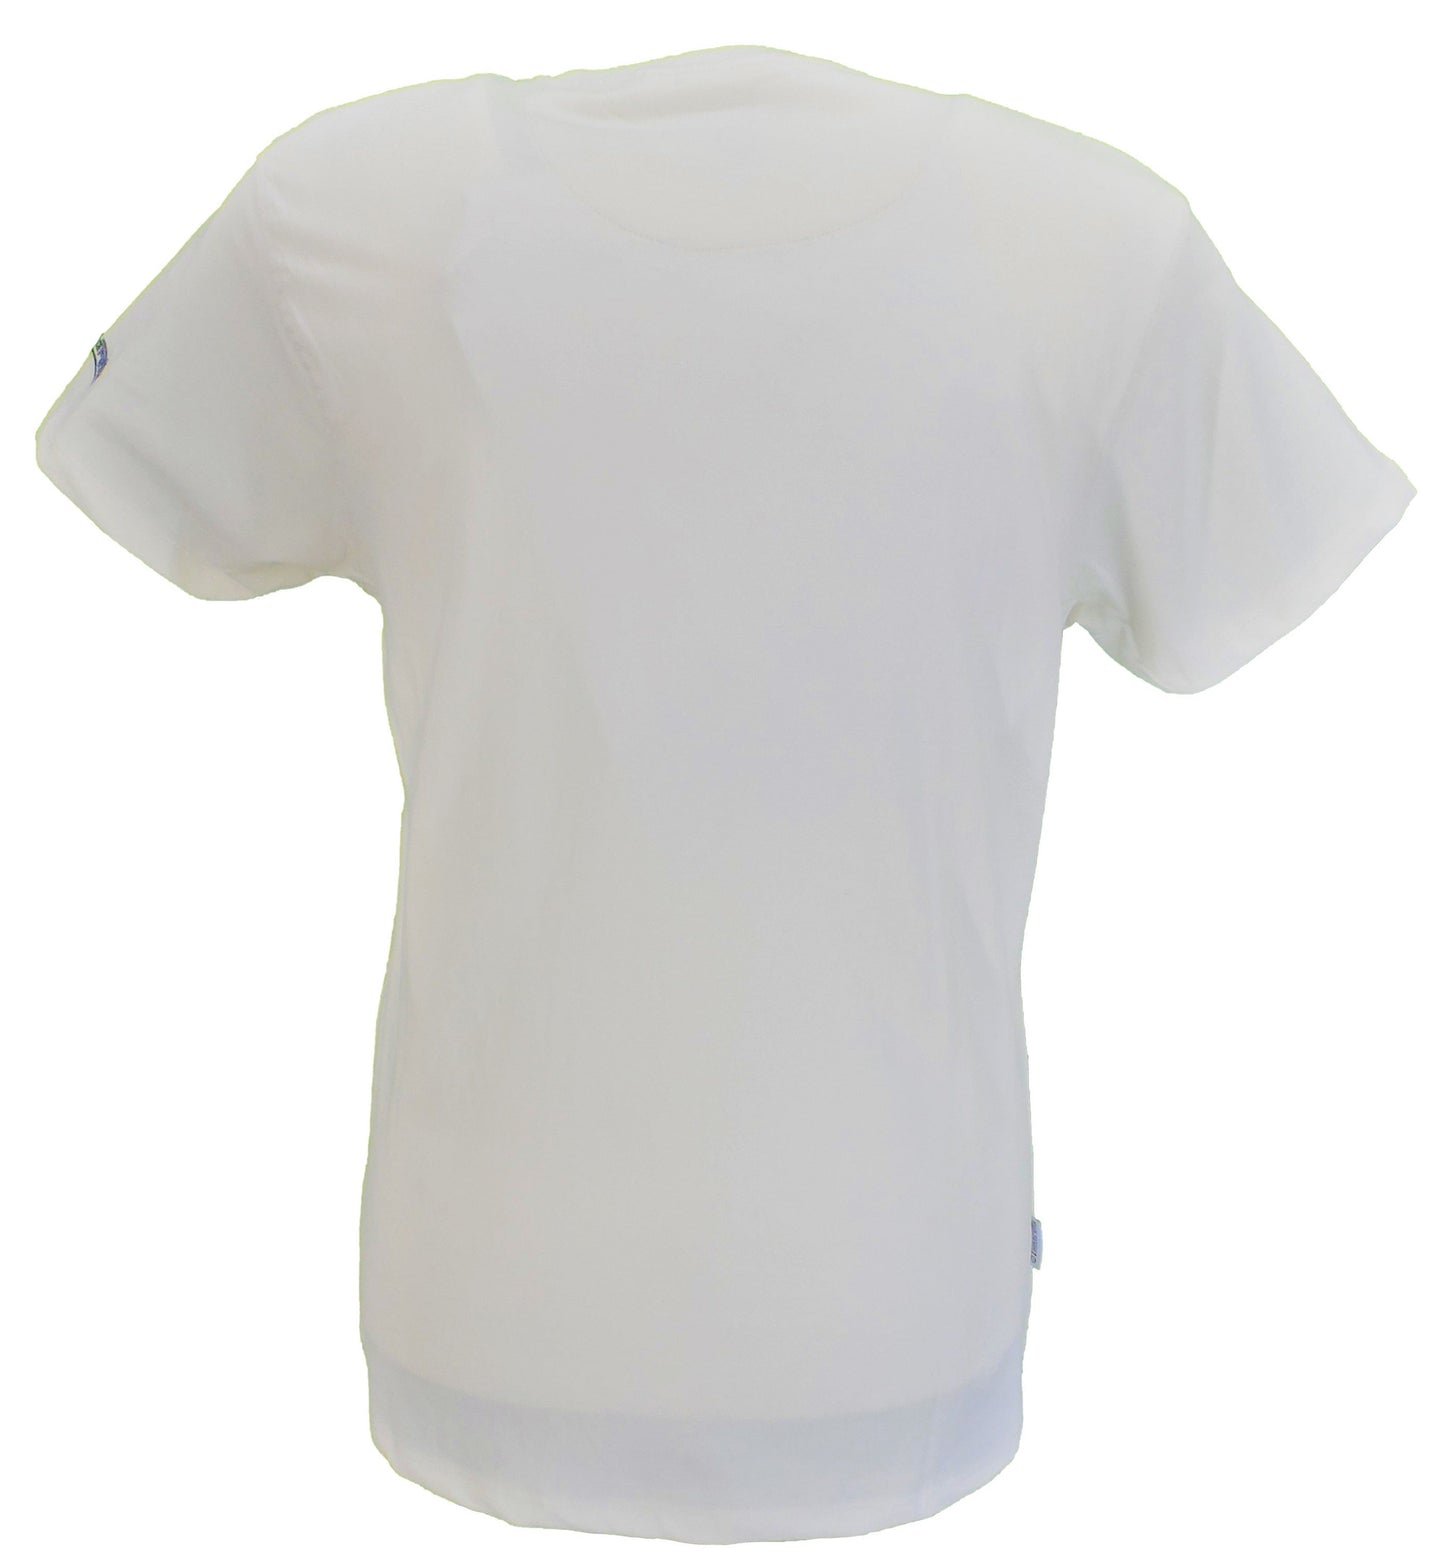 Maglietta da uomo Lambretta bianca con logo retro sbiadito